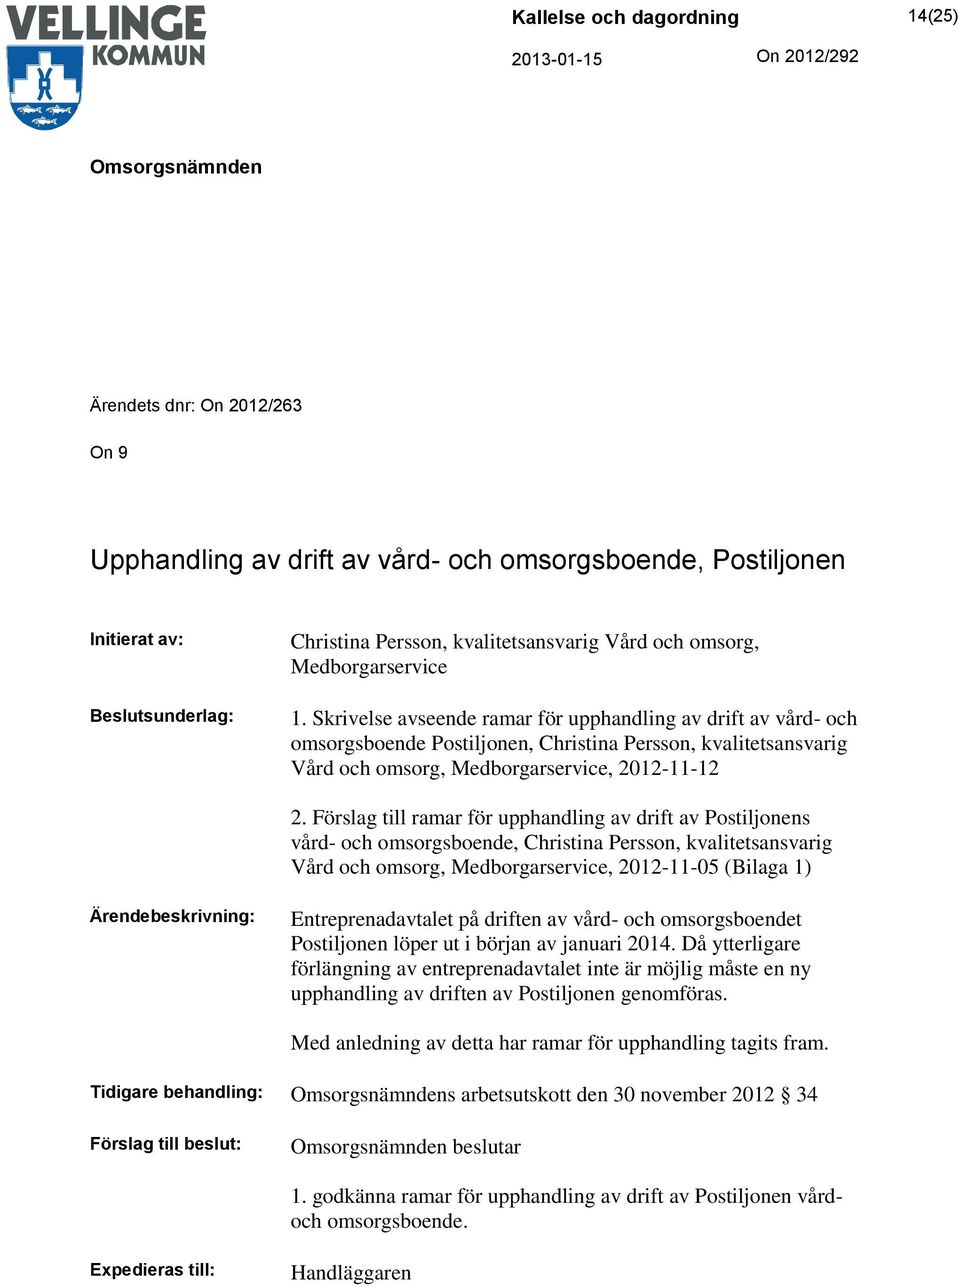 Förslag till ramar för upphandling av drift av Postiljonens vård- och omsorgsboende, Christina Persson, kvalitetsansvarig Vård och omsorg, Medborgarservice, 2012-11-05 (Bilaga 1) Ärendebeskrivning: